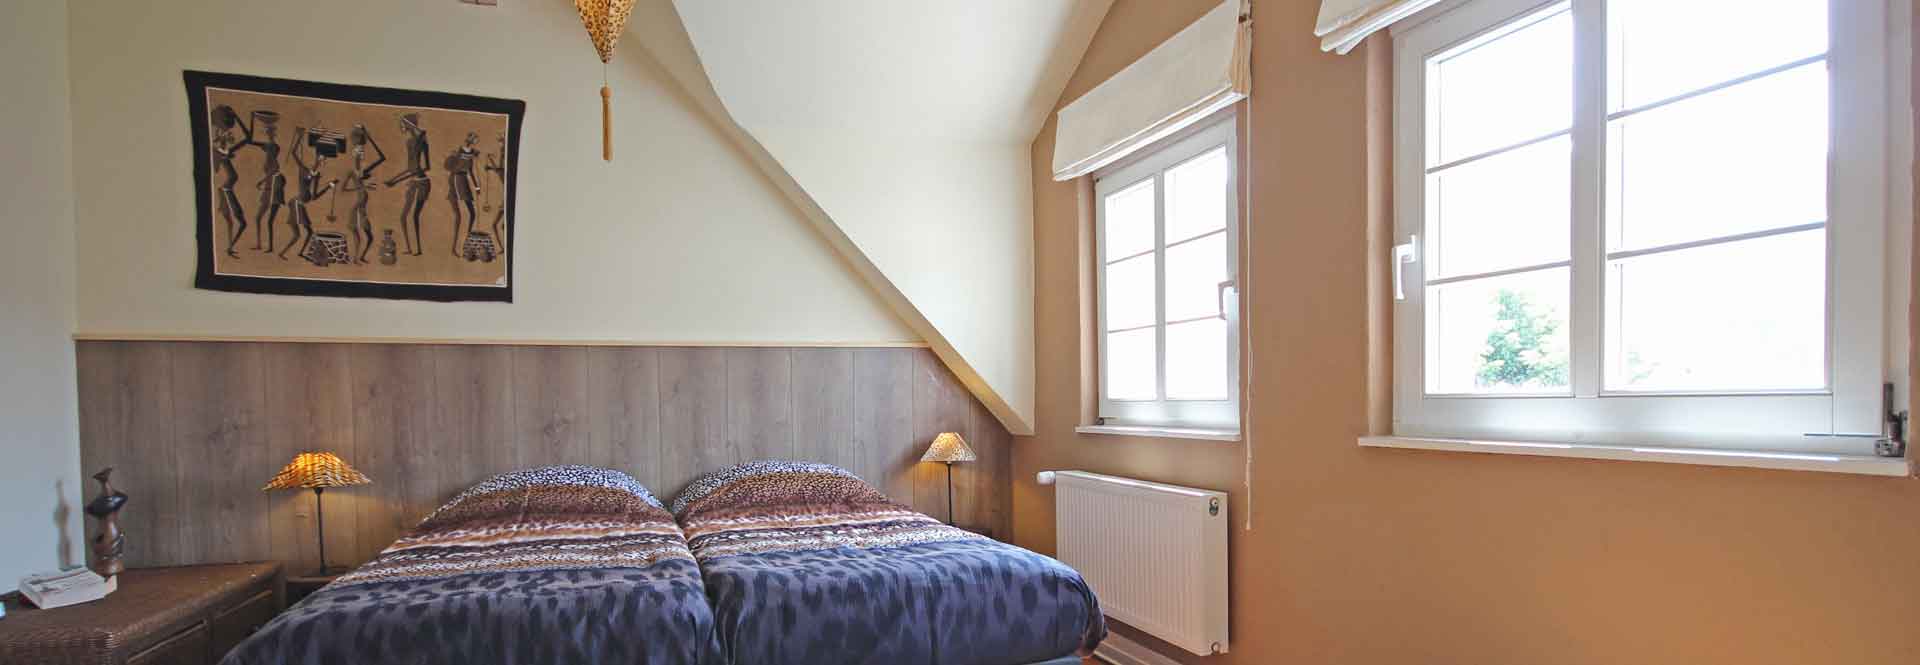 Afrikaanse slaapkamer met uitzicht op Schloss Malberg